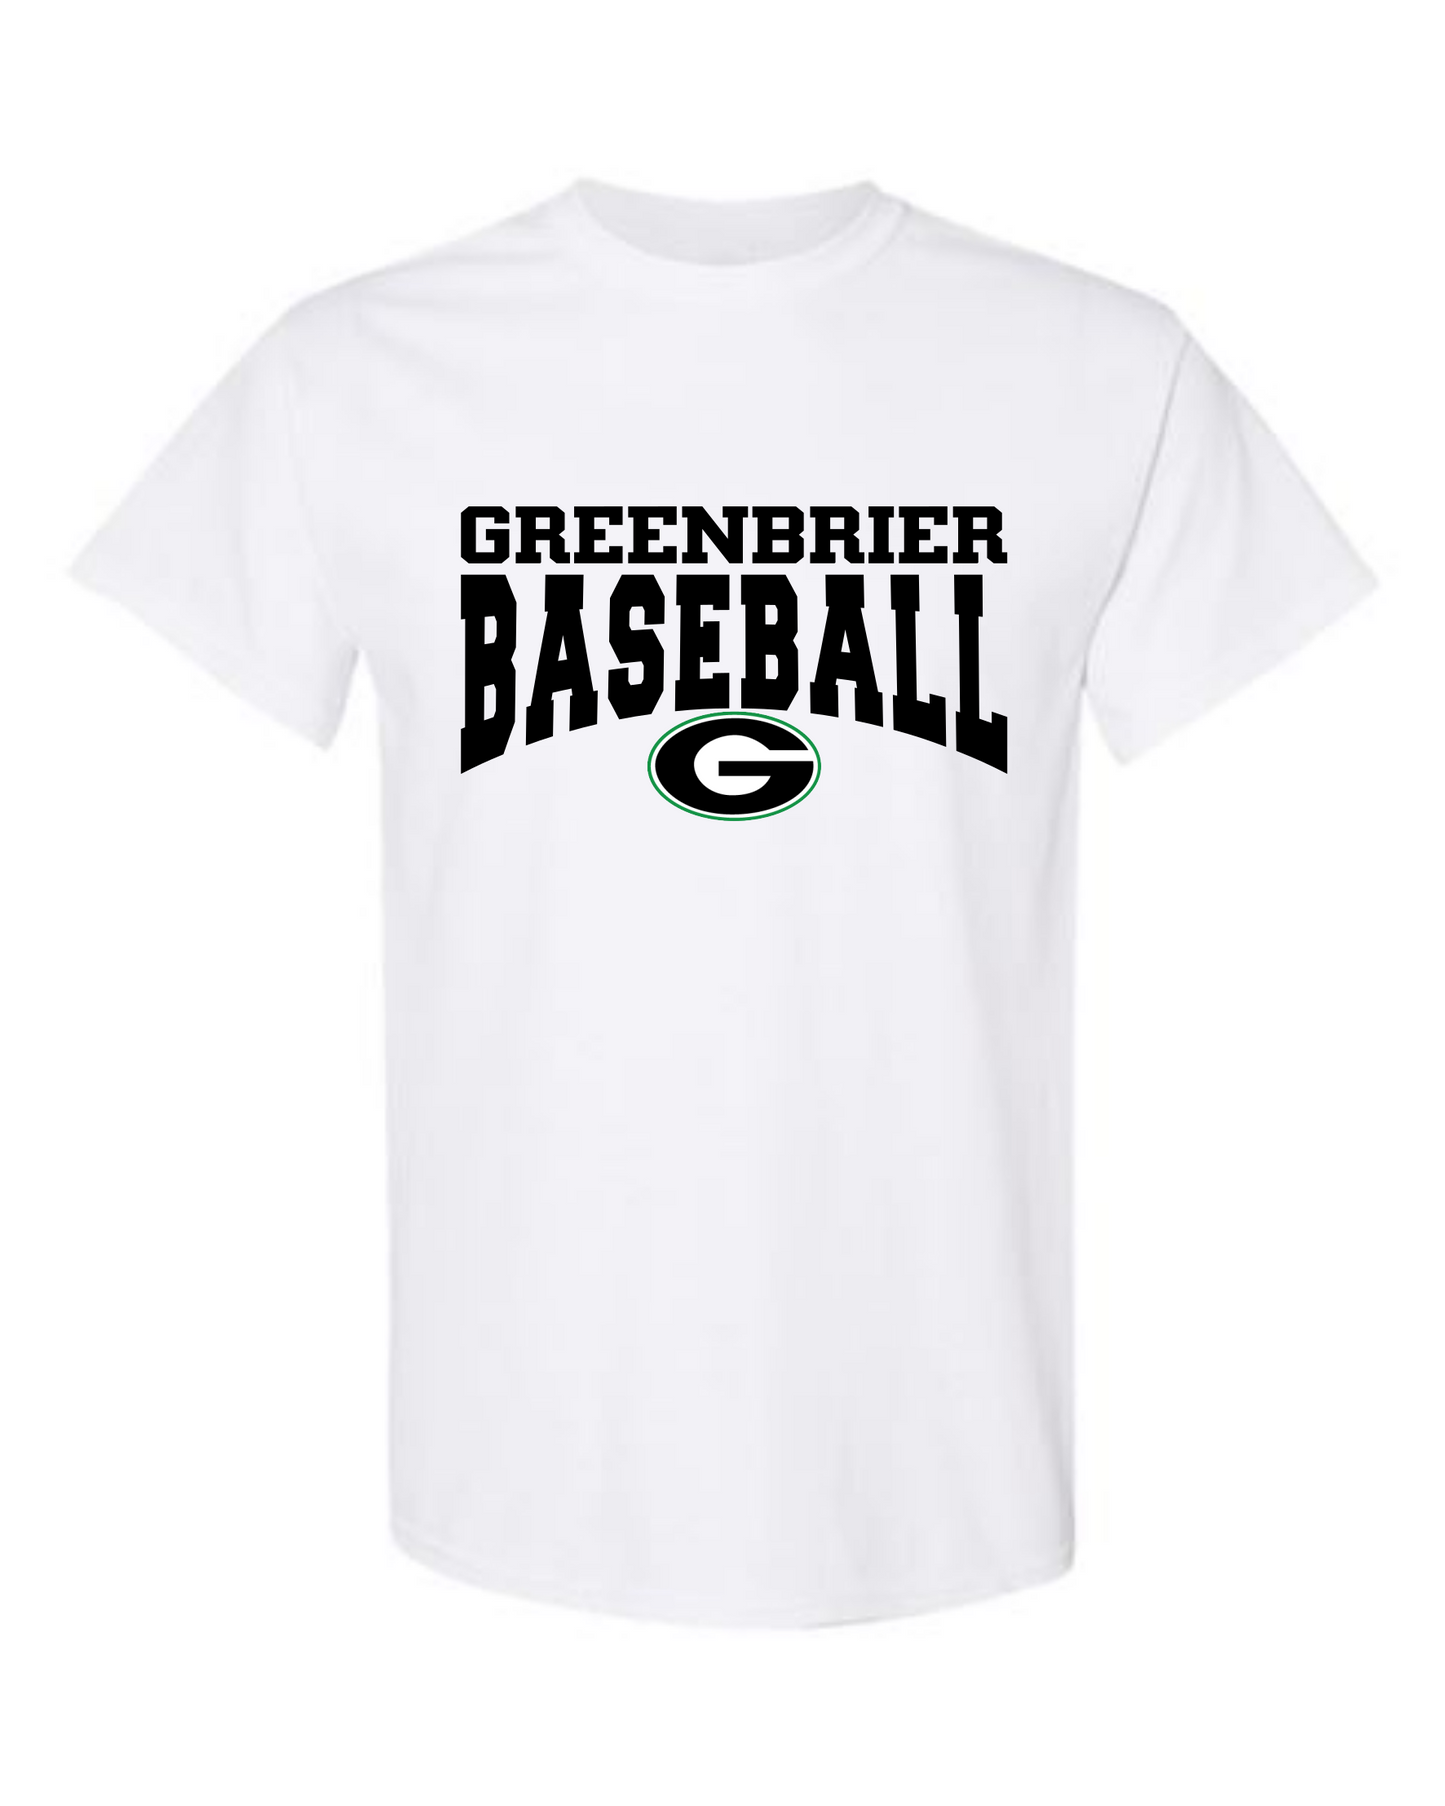 Greenbrier Baseball Tshirt